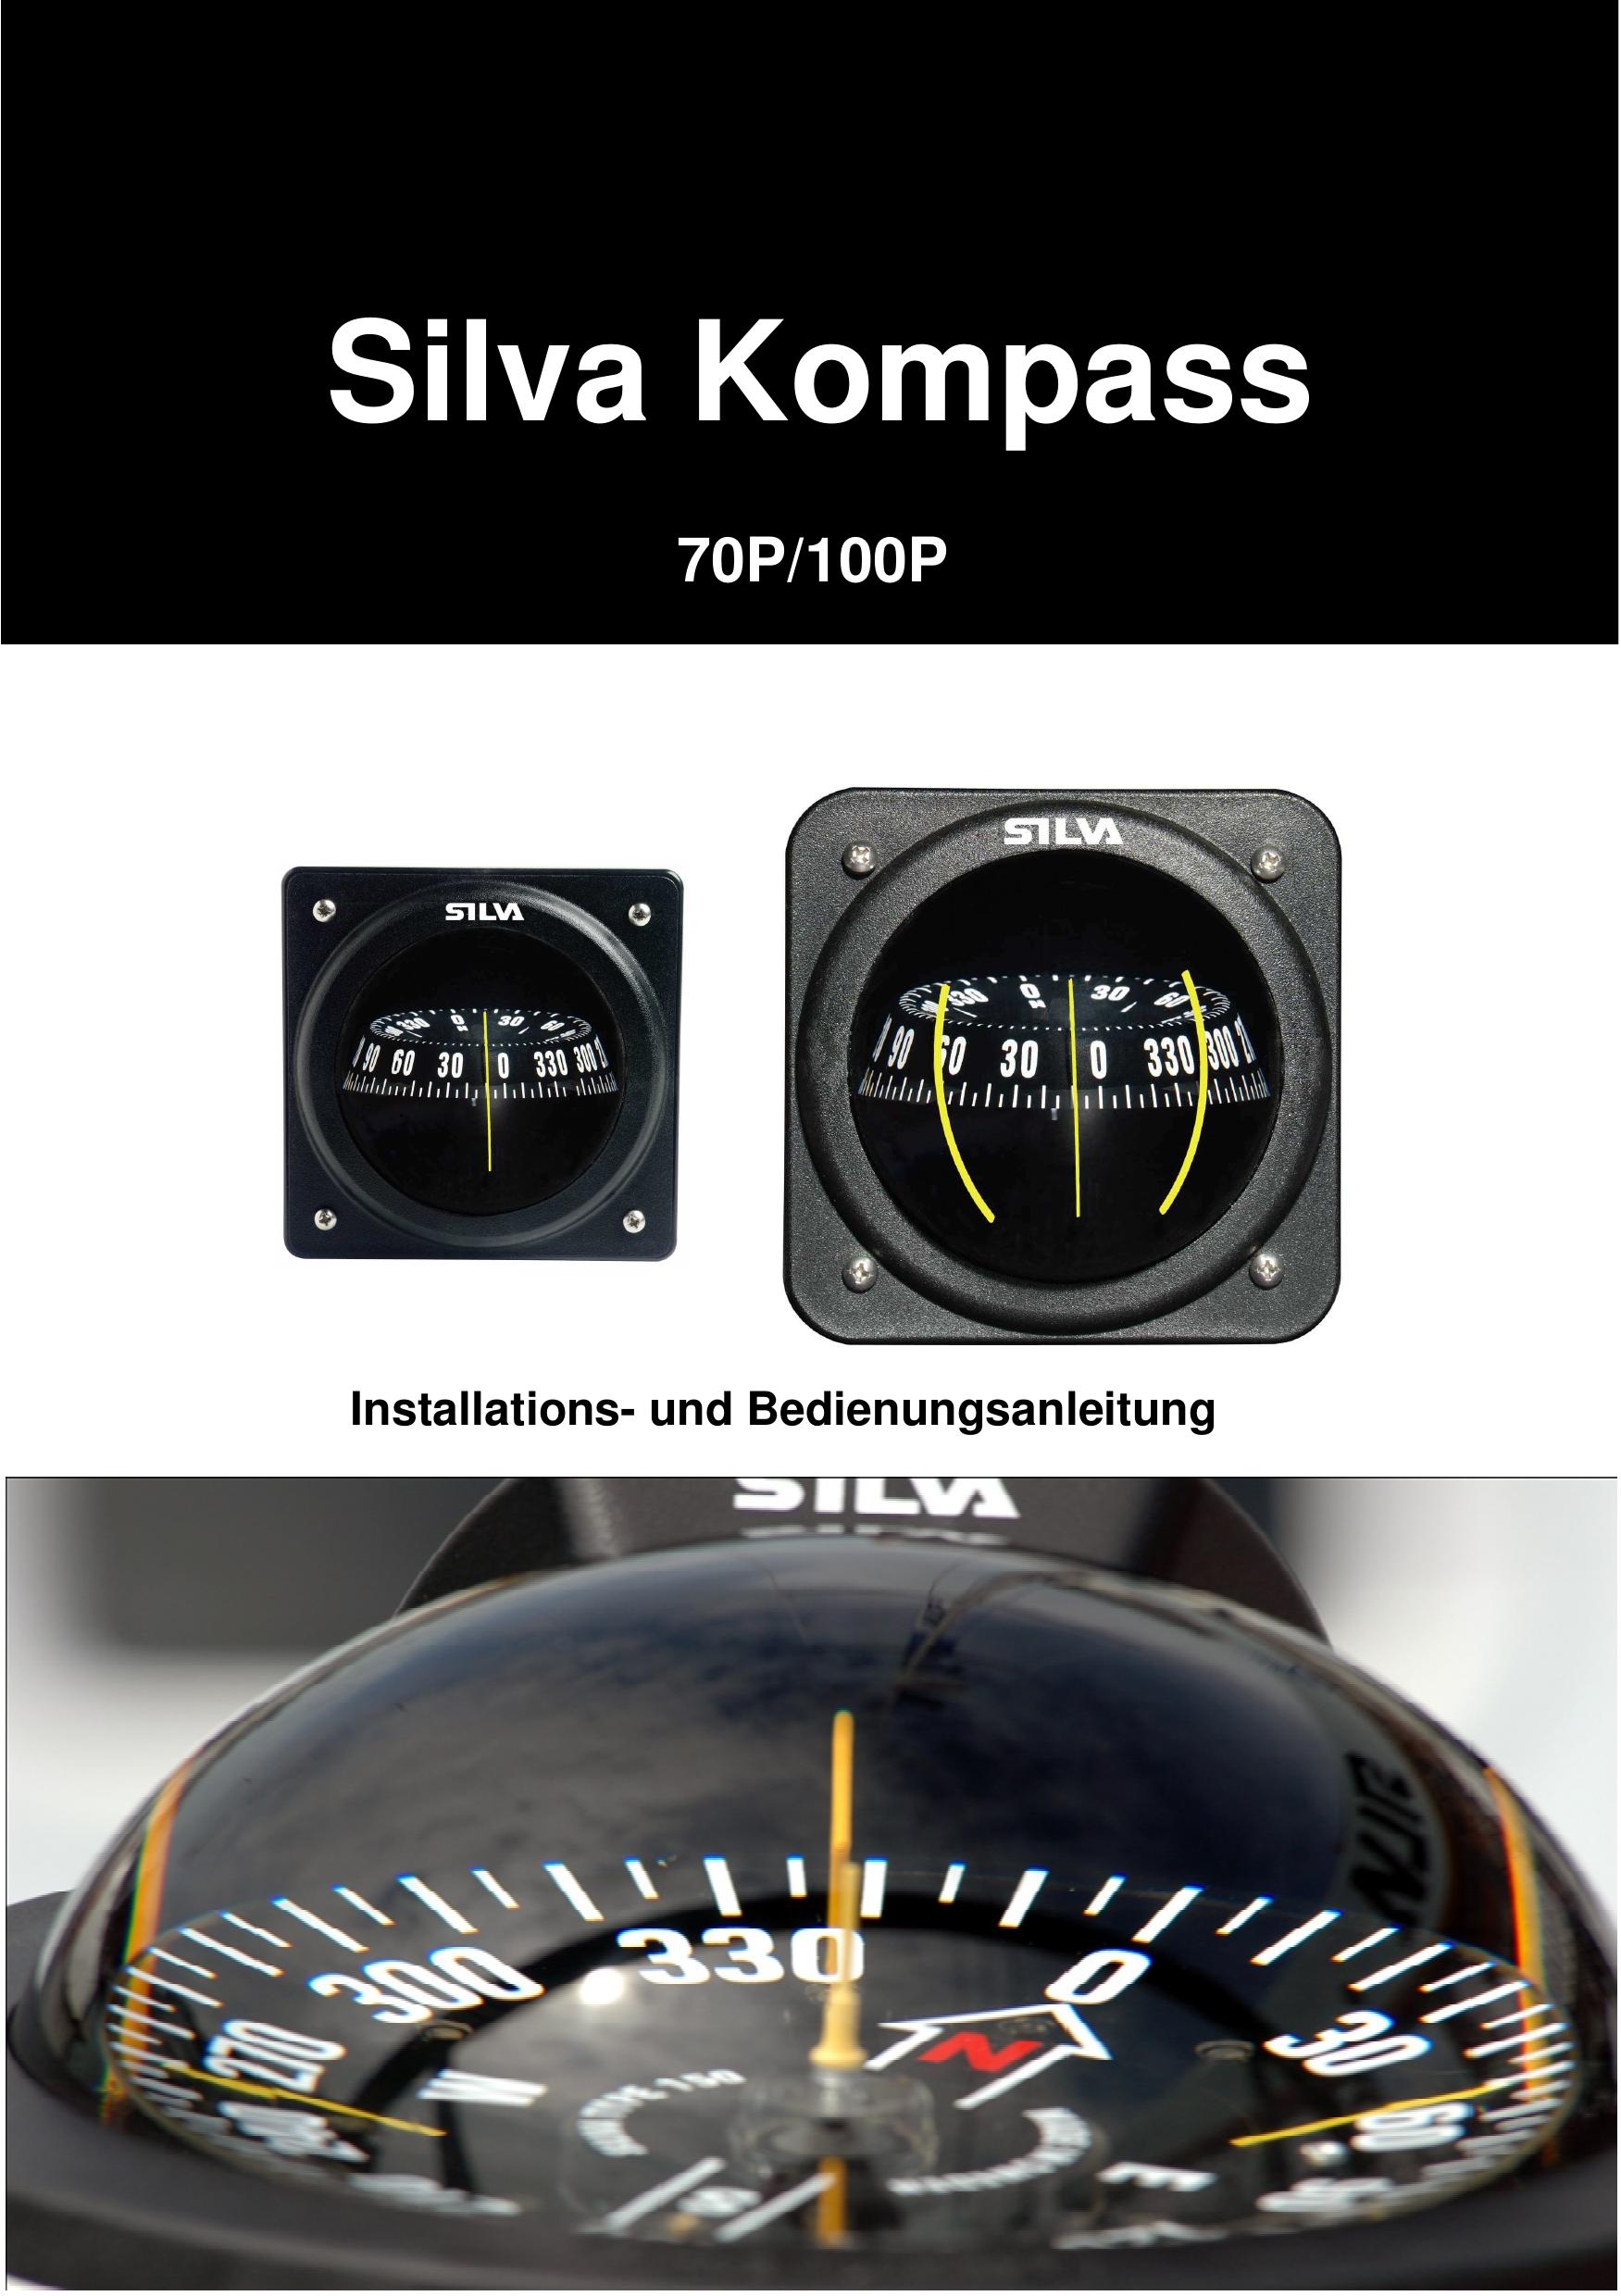 Silva 100p Boating Equipment User Manual